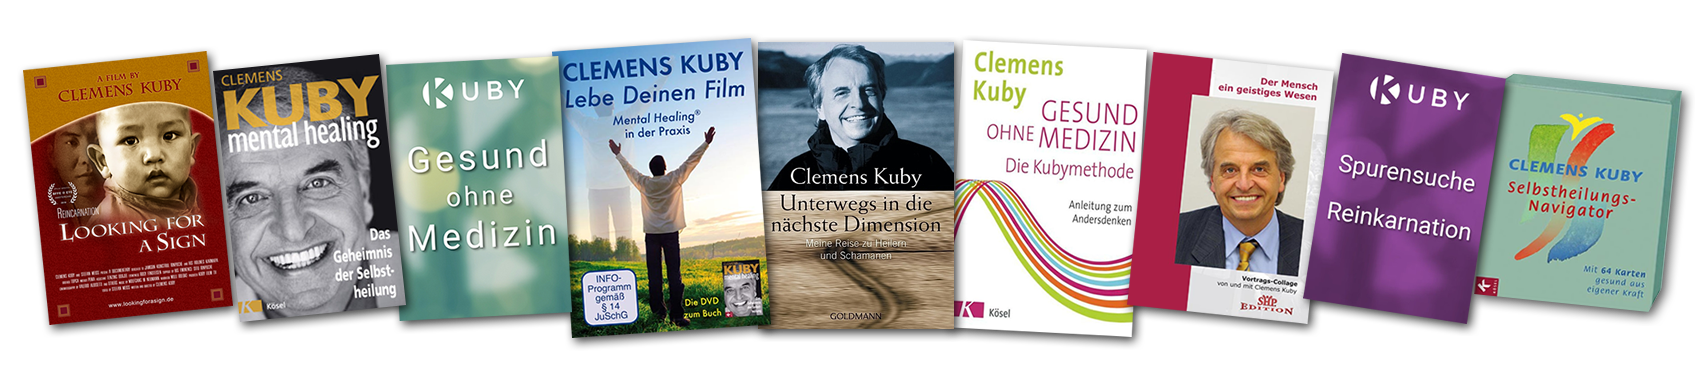 Seminare, Filme und Bücher von Clemens Kuby